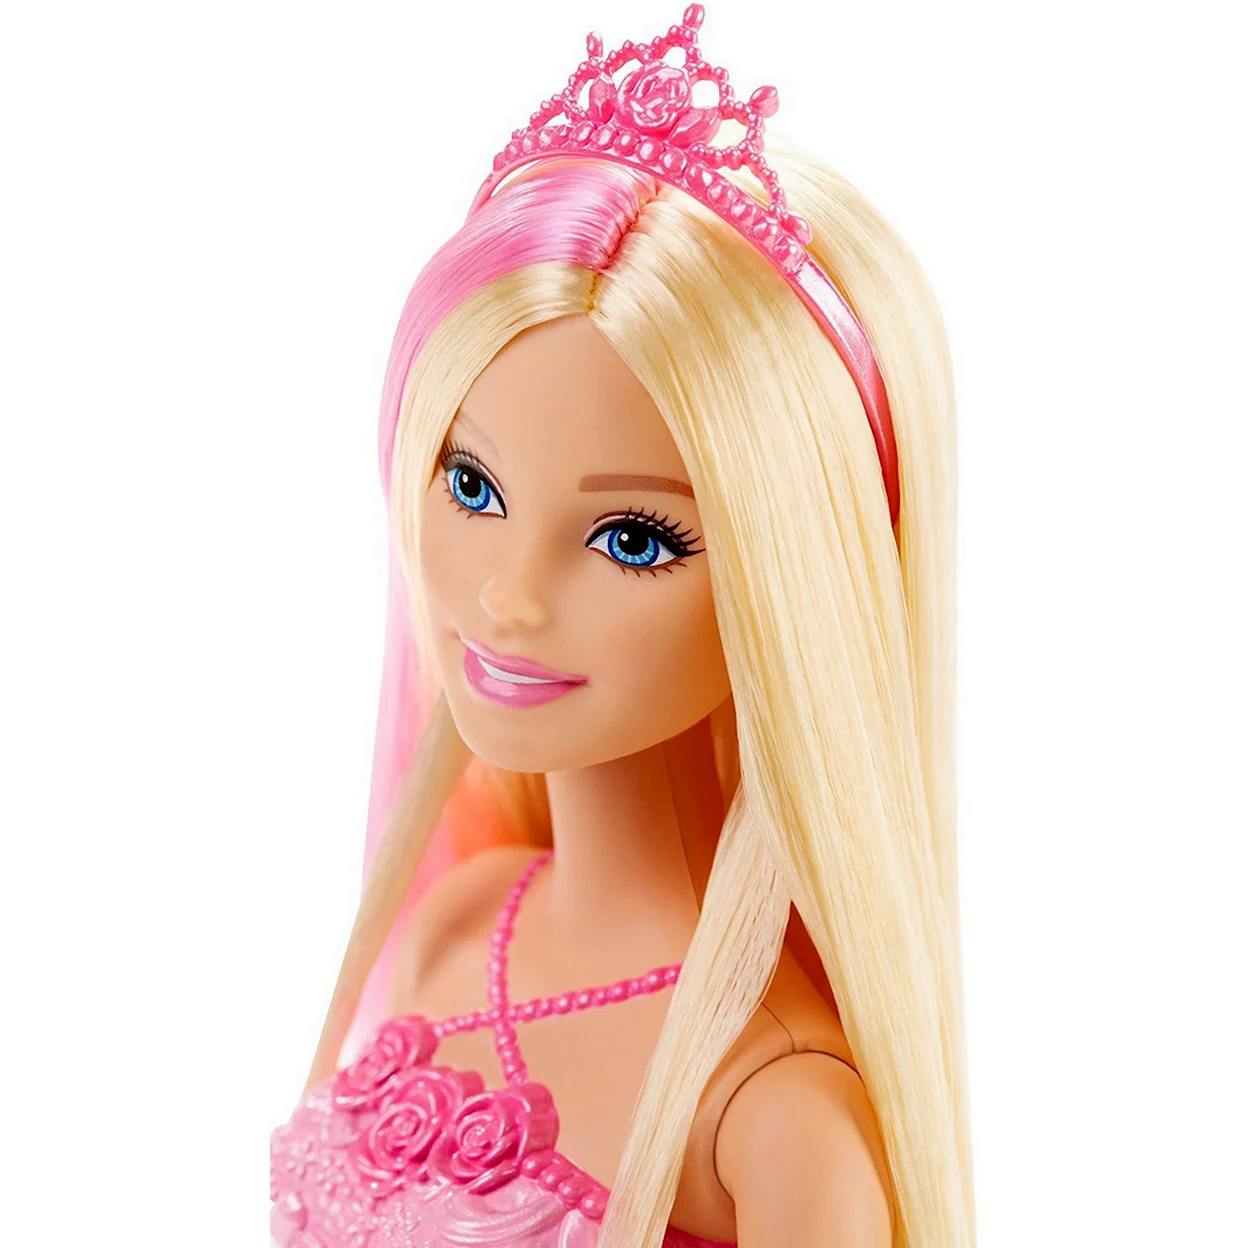 Кукла Barbie принцесса с бесконечно длинными волосами 29 см dkb61. Игрушка